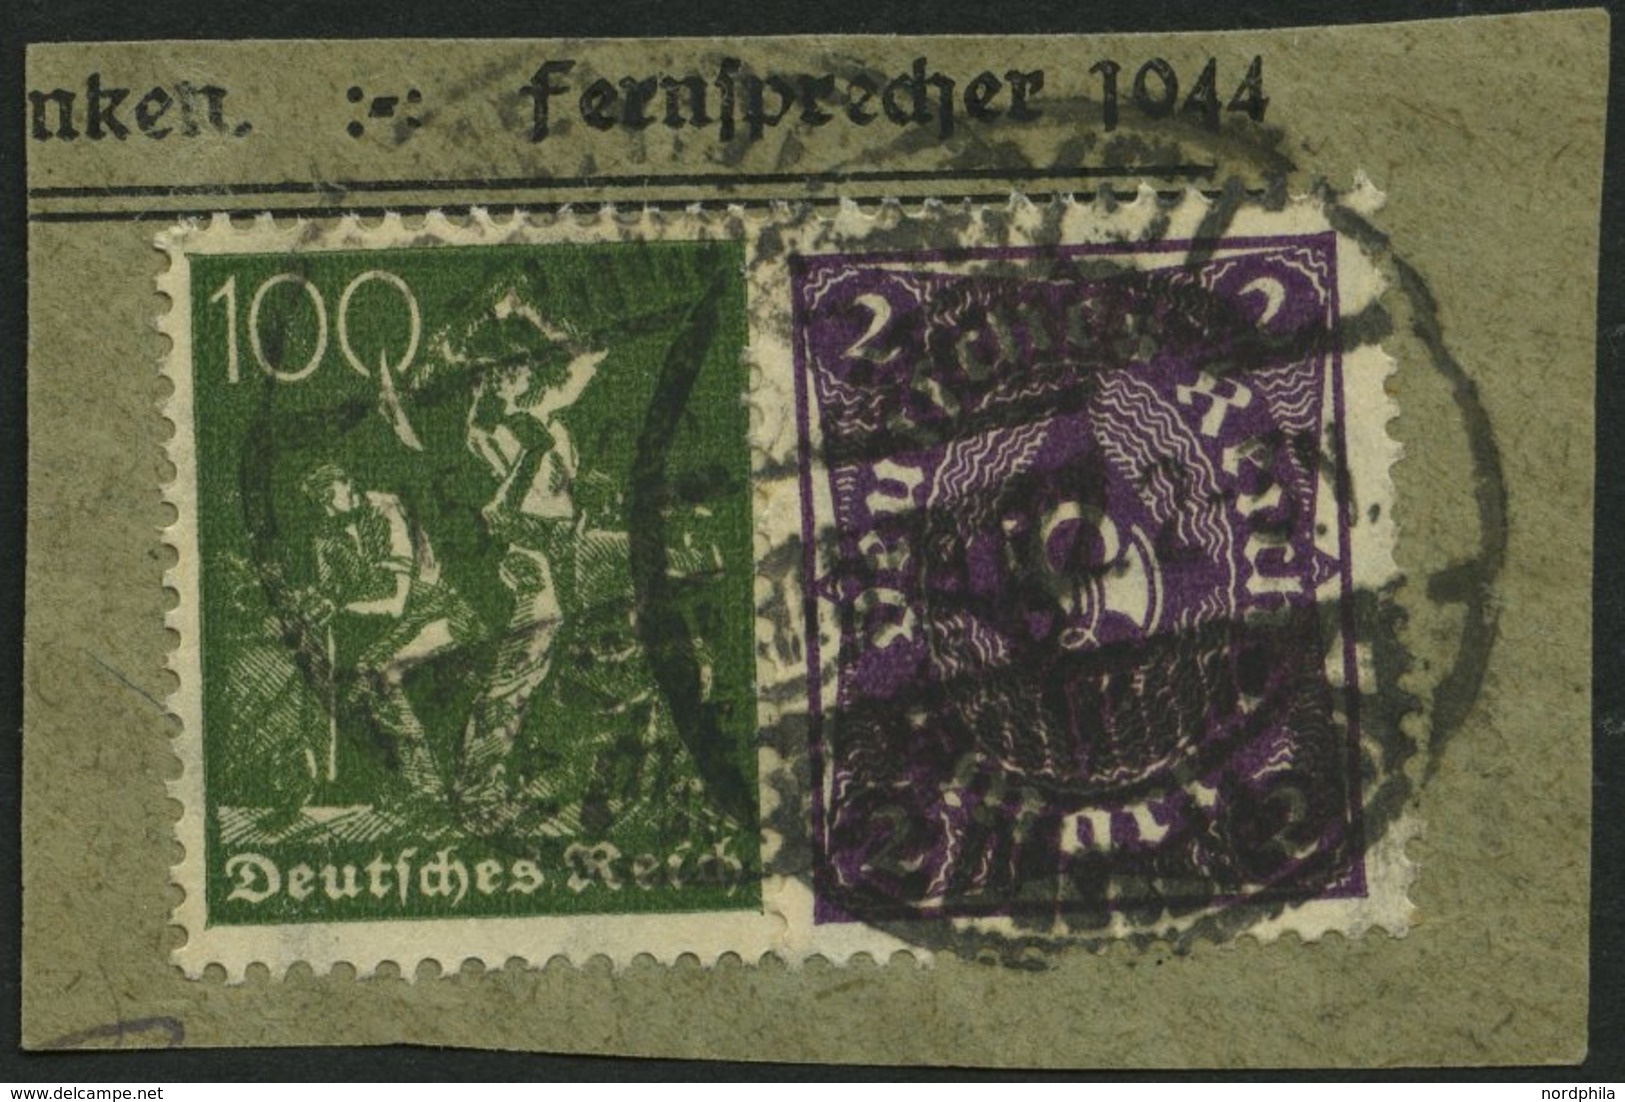 Dt. Reich 224b BrfStk, 1922, 2 M. Dunkelviolett Mit Zusatzfrankatur Auf Briefstück, Pracht, Gepr. Infla, Mi. 110.- - Used Stamps